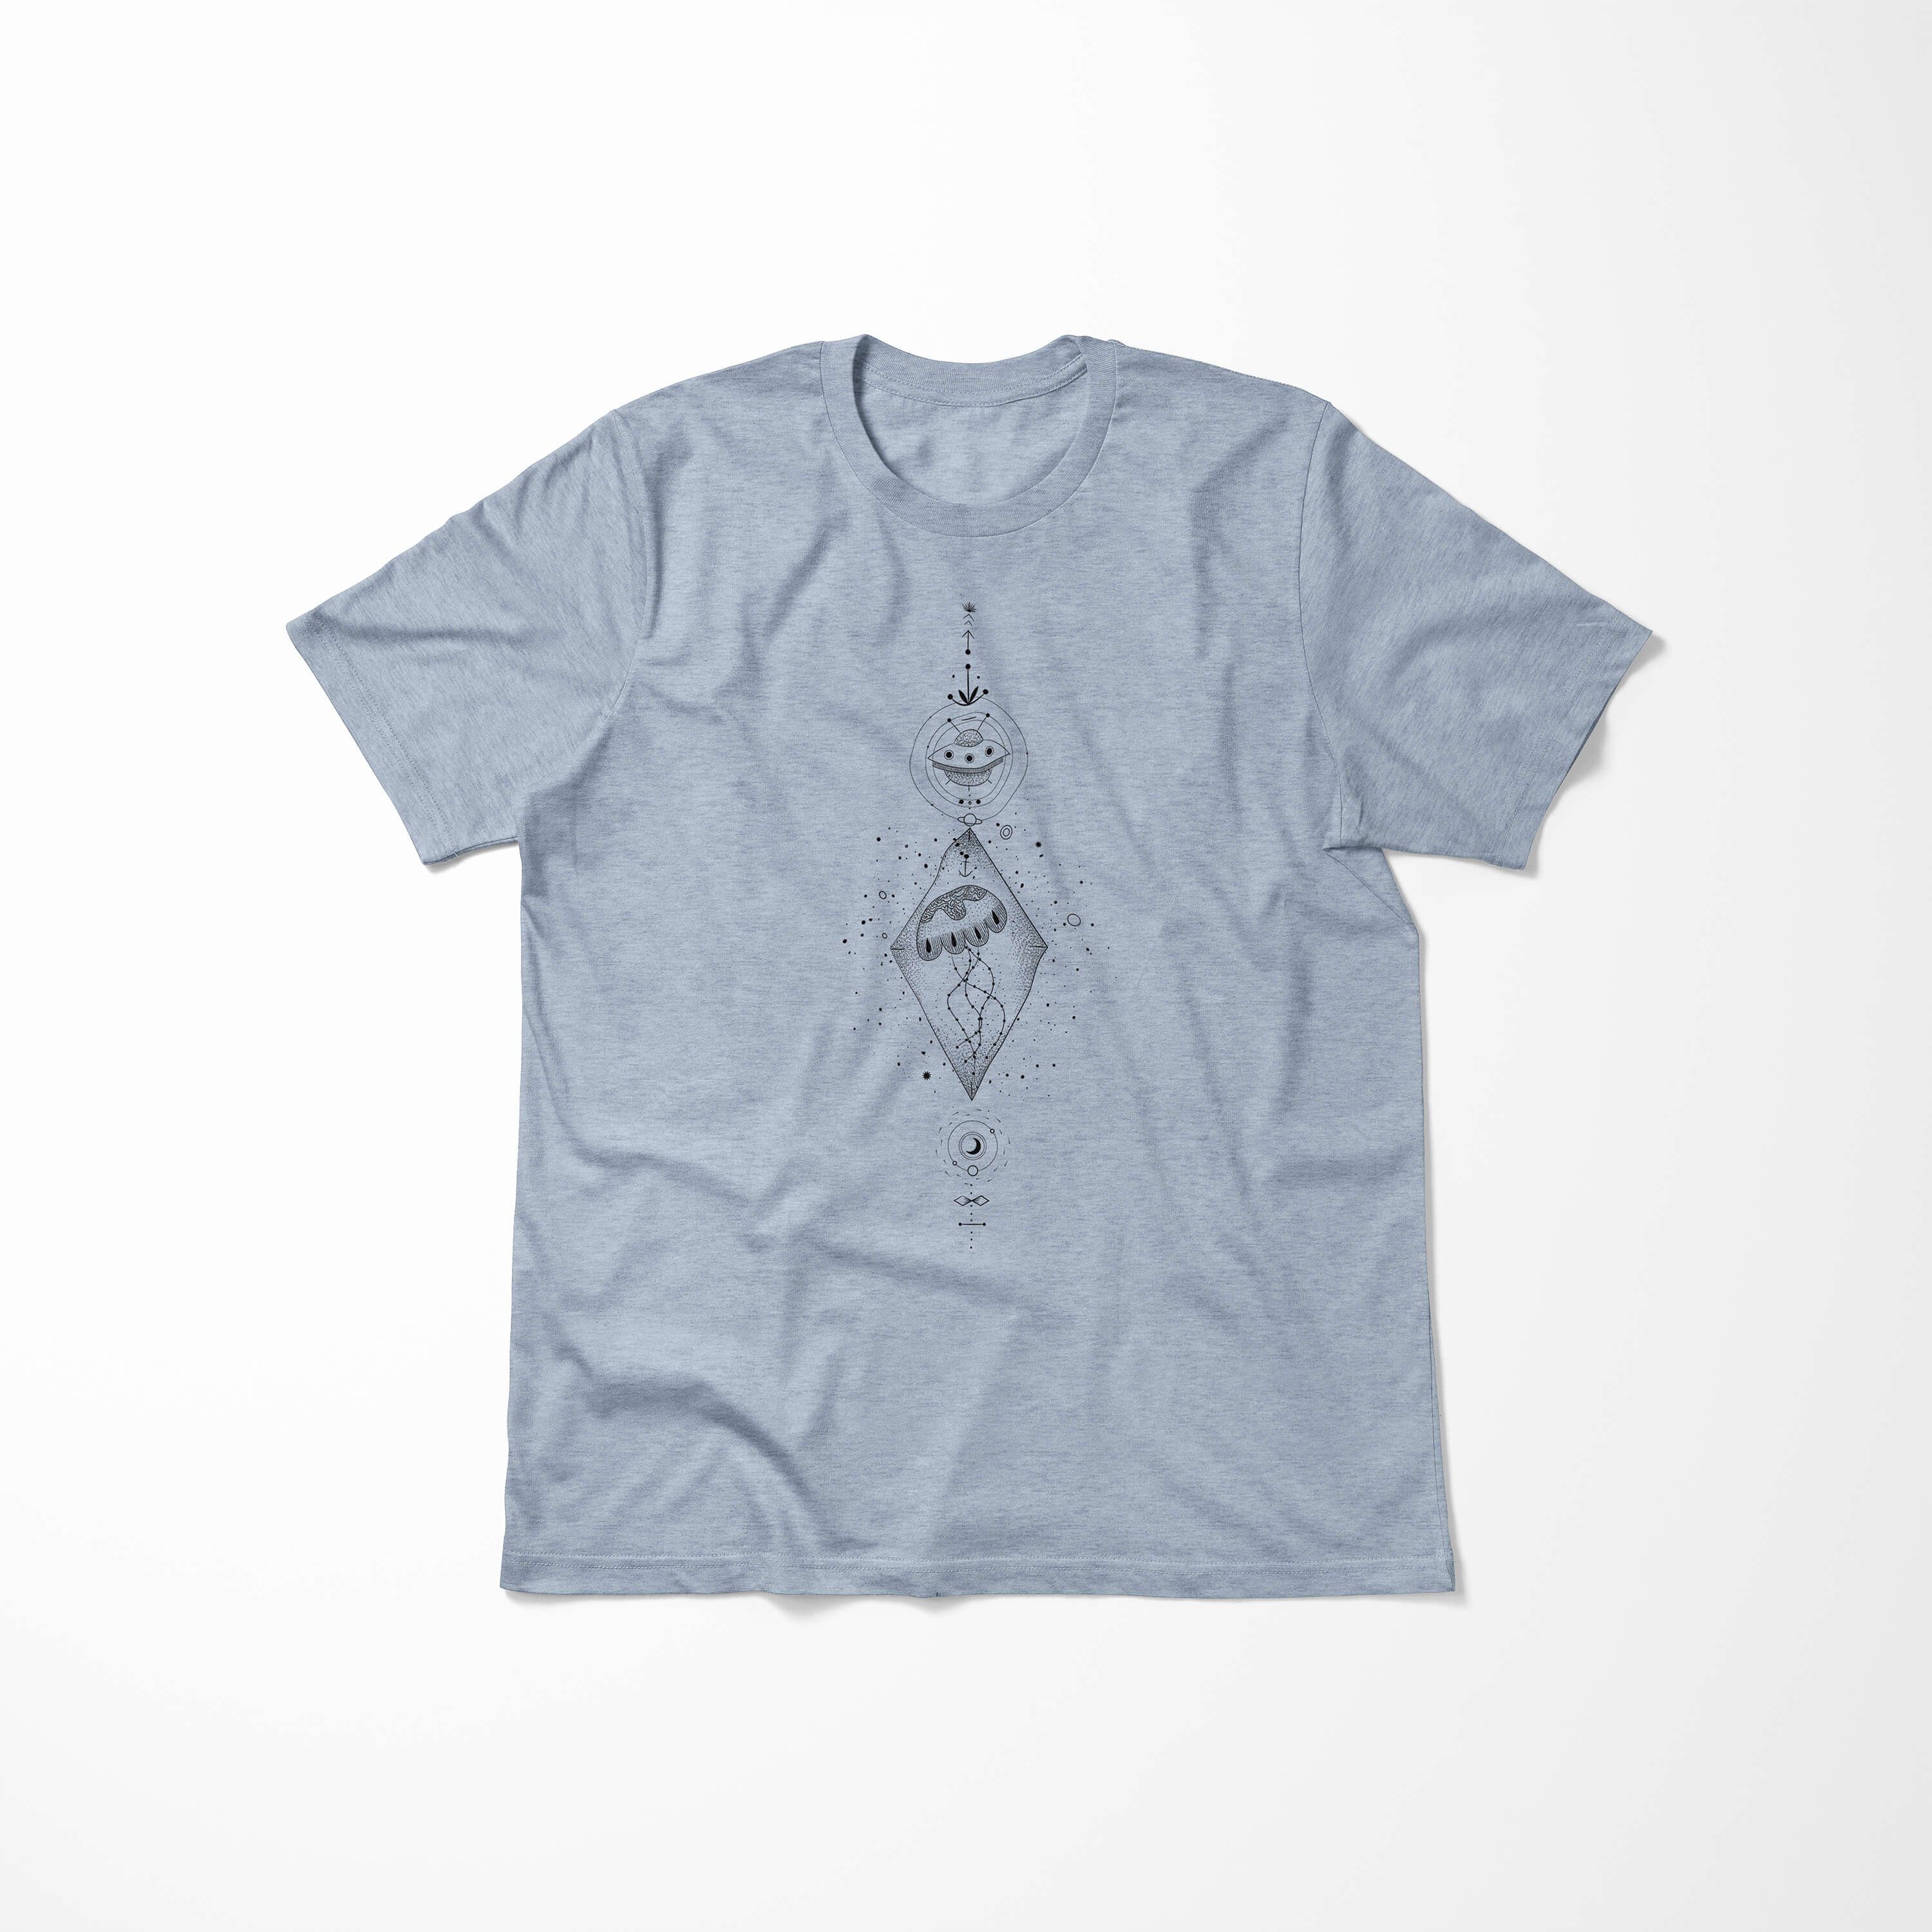 Sinus Art T-Shirt T-Shirt Struktur angenehmer feine Premium Symbole Serie Alchemy Tragekomfort Denim Stonewash No.0059